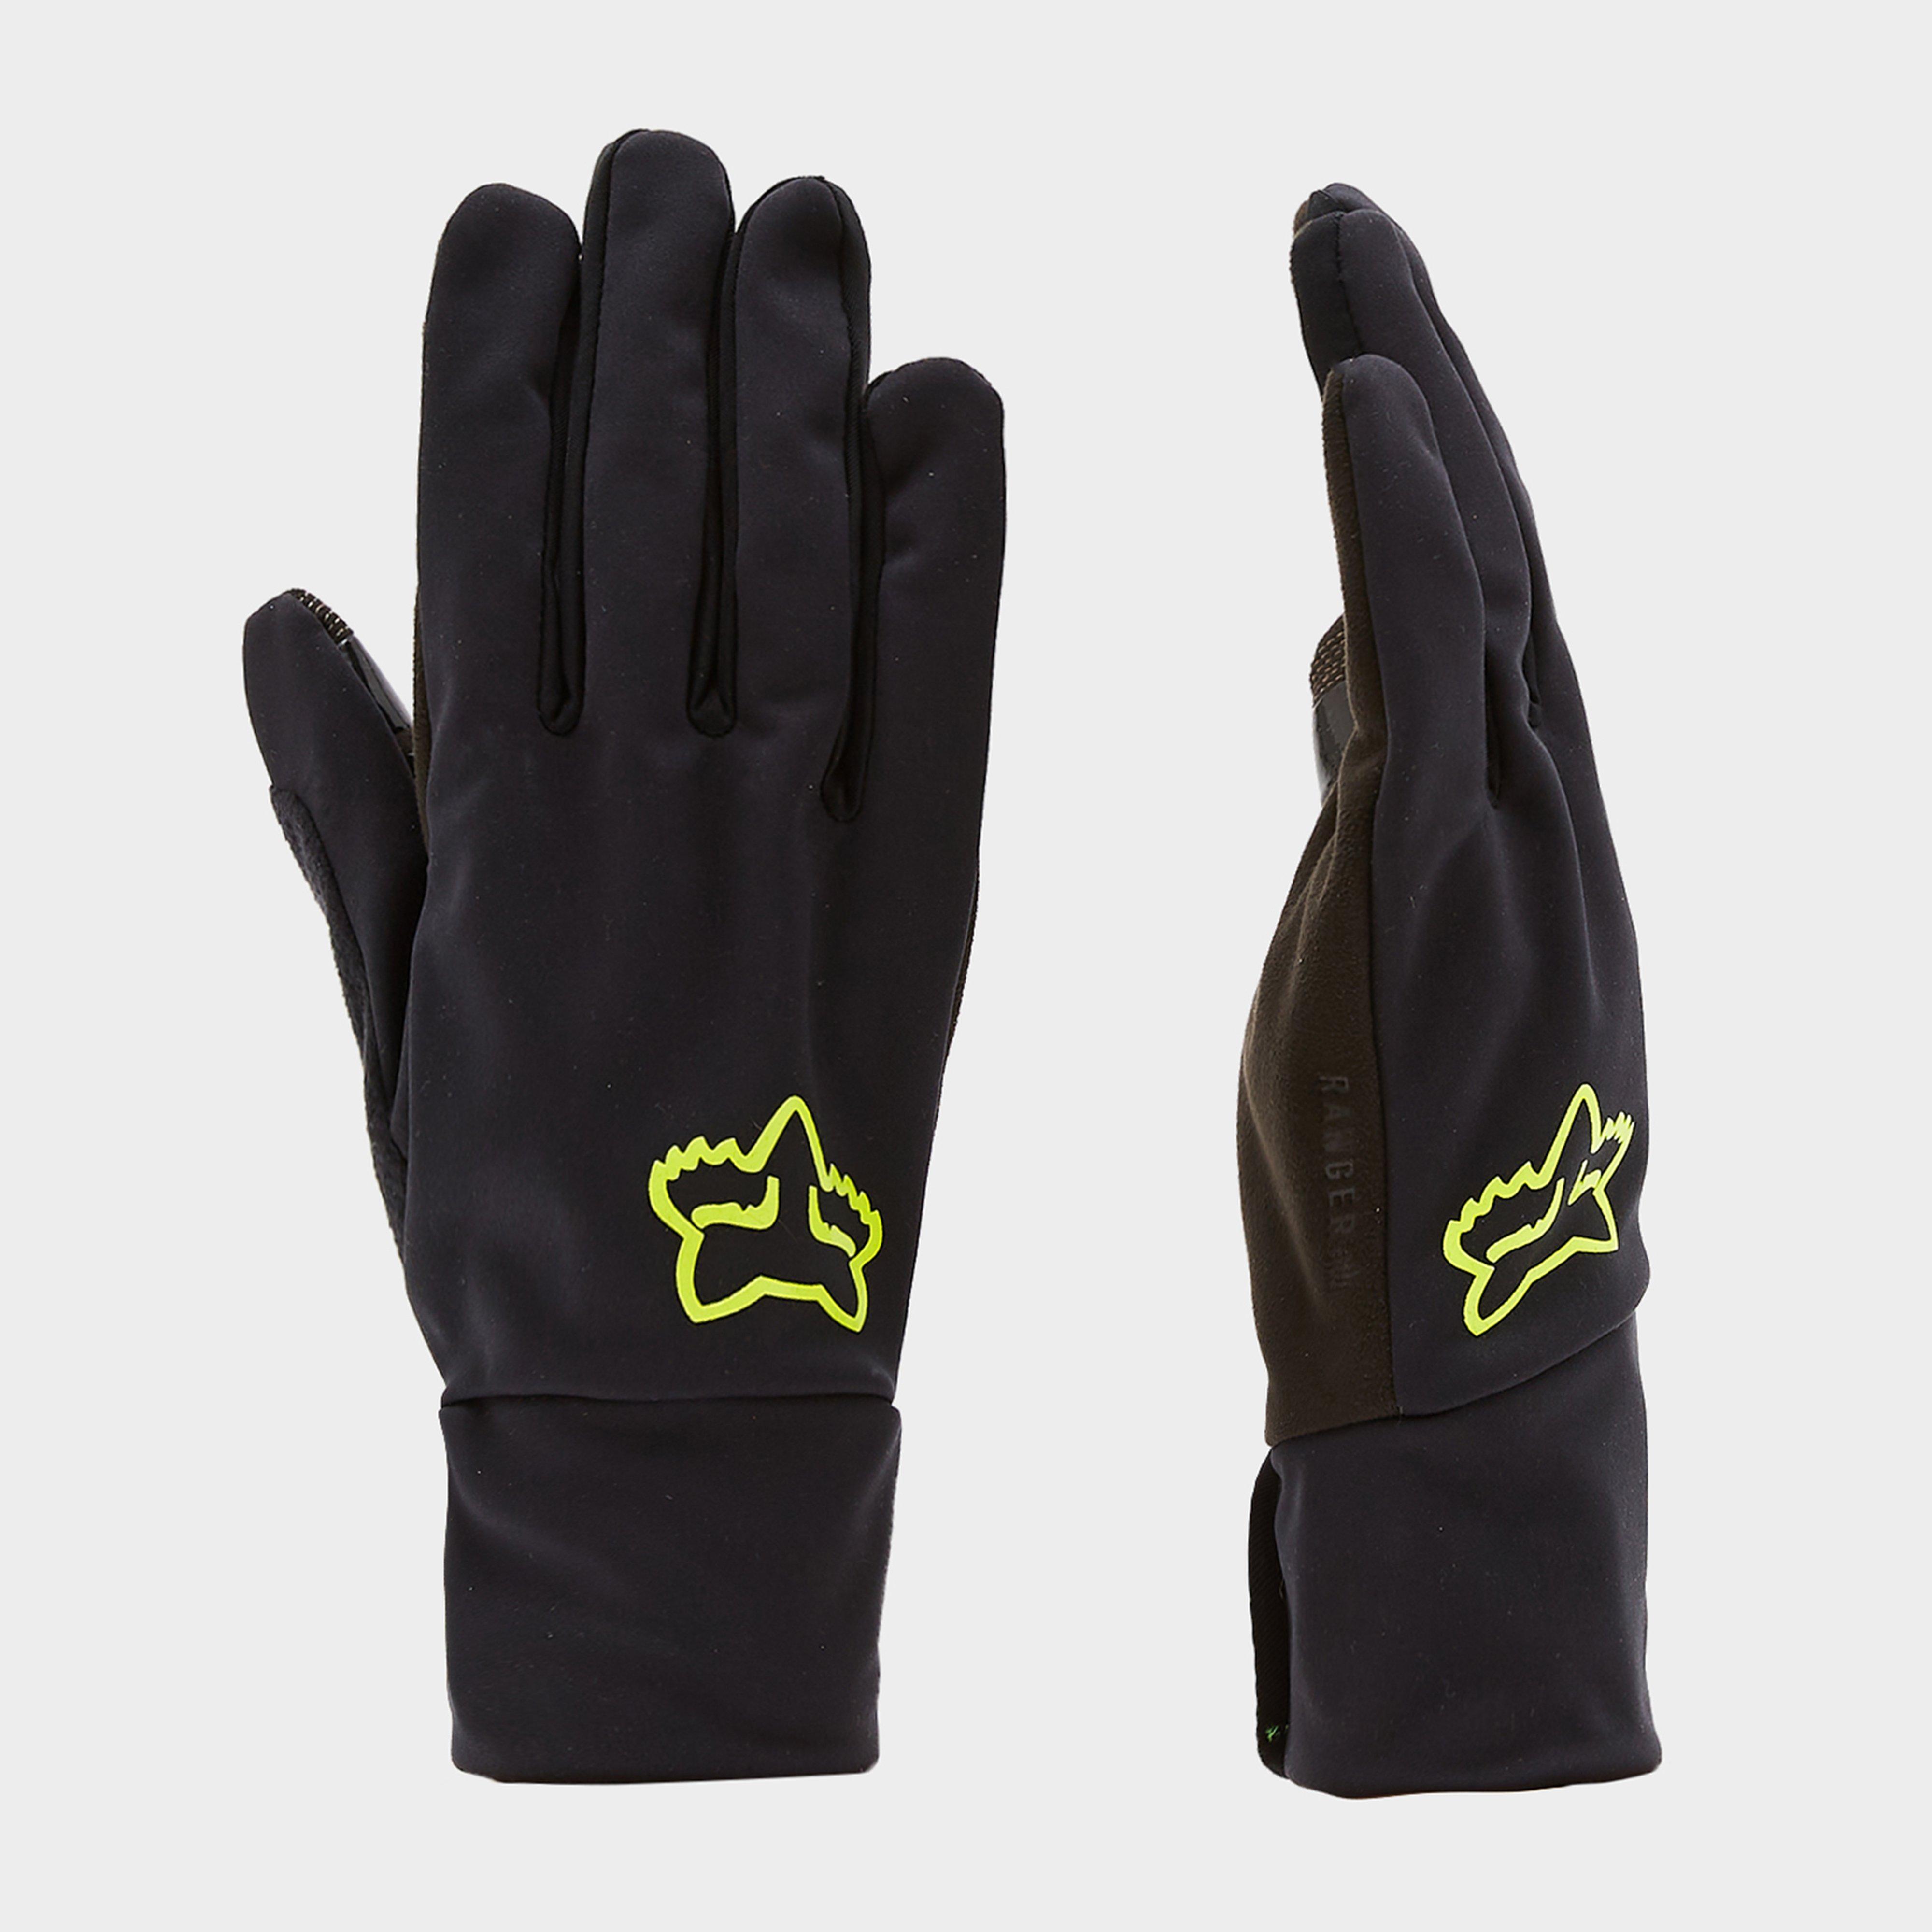  Fox Ranger Fire Gloves, Black